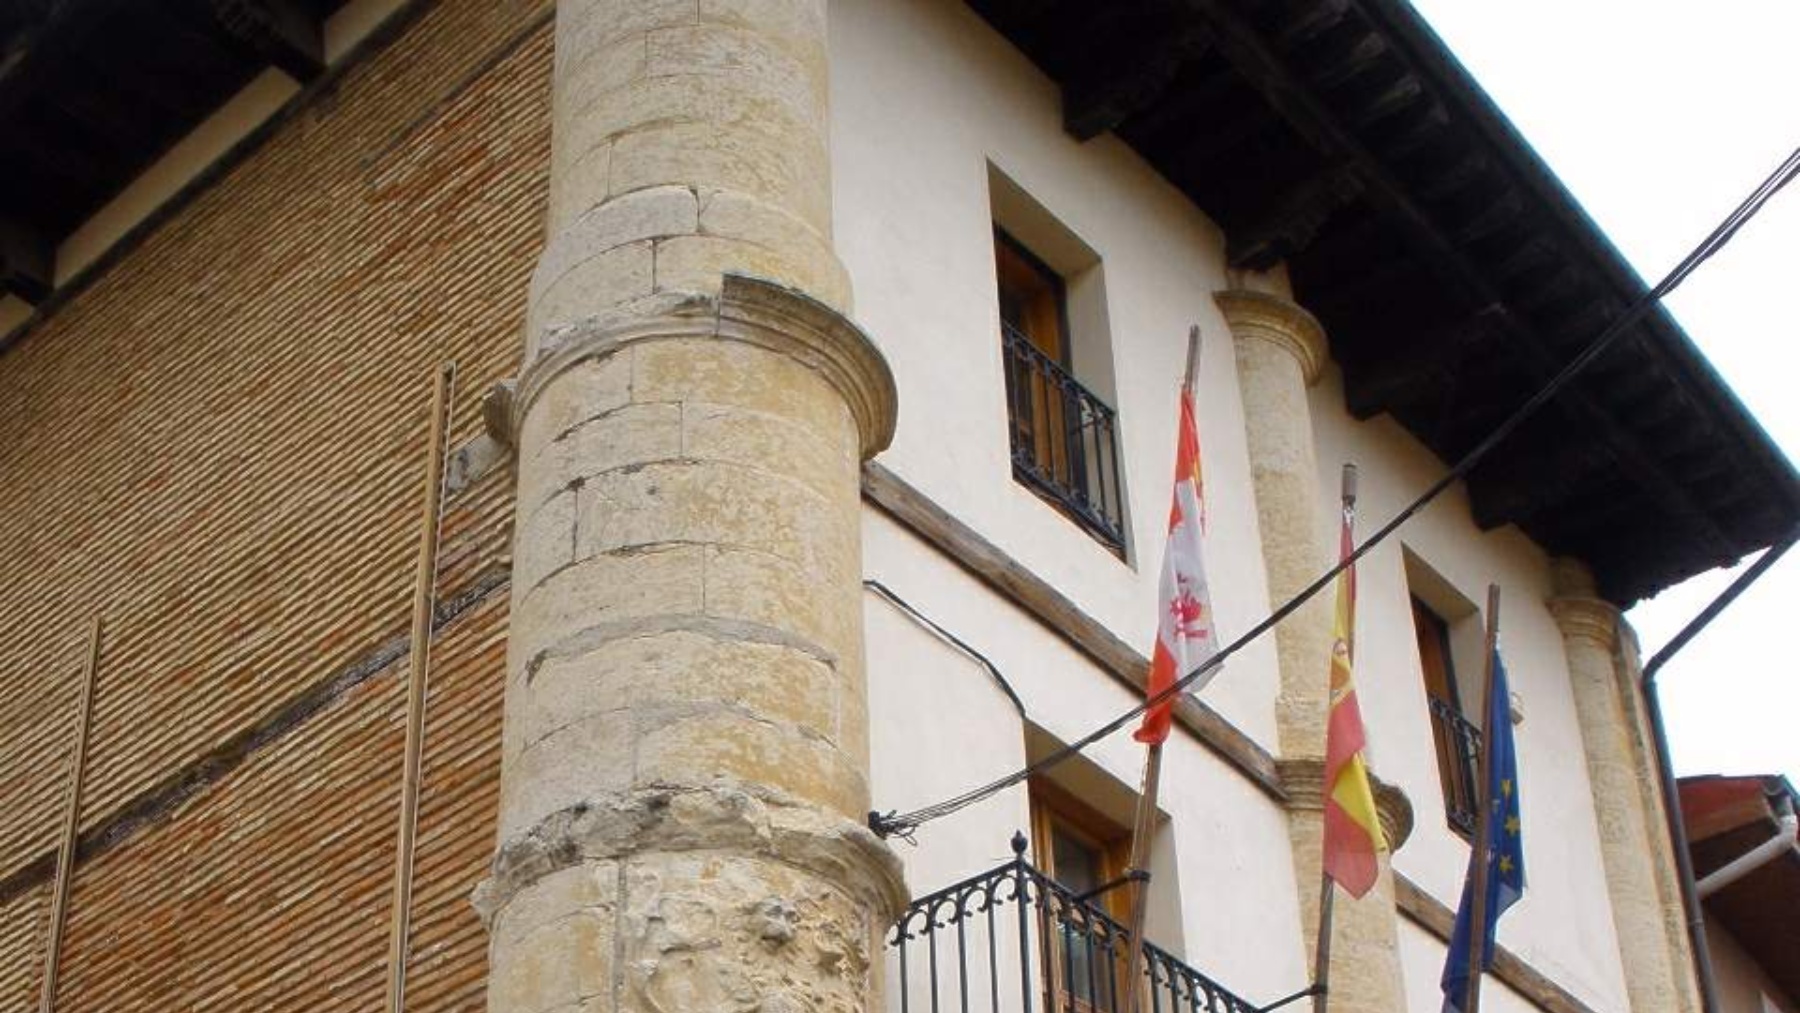 Ayuntamiento de Treviño. (Wikipedia)